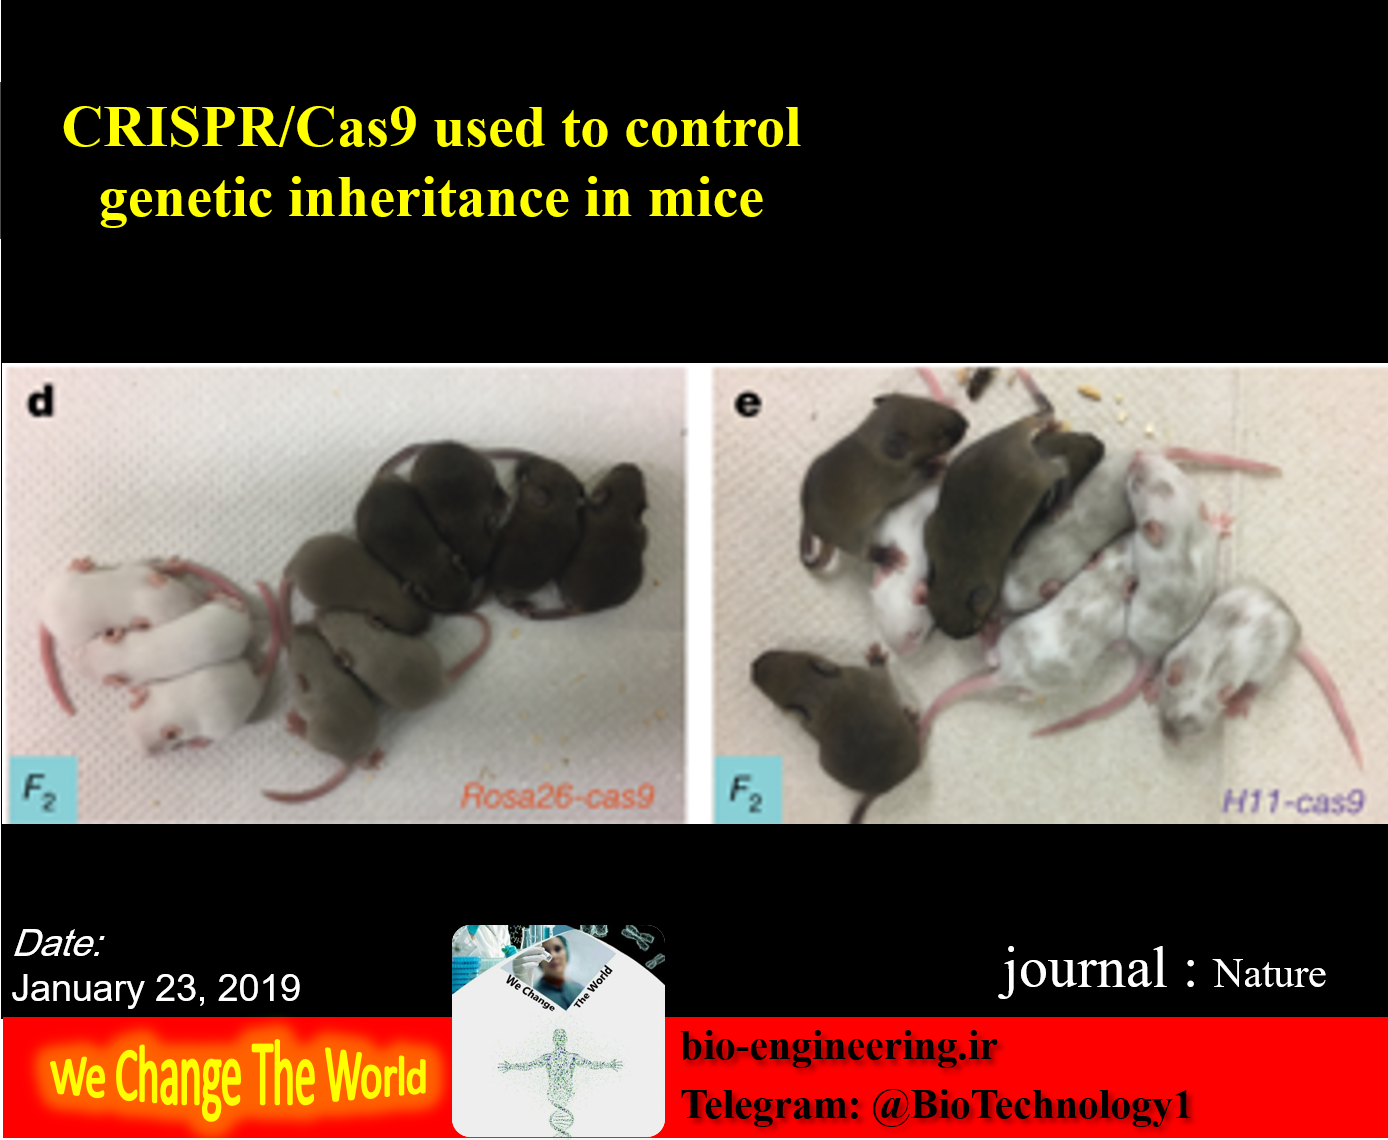 Saeed Kargar, [03.03.19 20:01] به‌کارگیری CRISPR/Cas9 در کنترل وراثت ژنتیکی در موش‌ها Summary: بیولوژیست‌ها با استفاده از تکنولوژی ژنتیک فعال، اولین سازوکار جهان که مبتنی بر CRISPR/Cas9 است را برای کنترل وراثت ژنتیکی در یک پستاندار ایجاد کردند. این دستاورد در موش زمینه های لازم برای پیشرفت های بیشتر بر اساس این تکنولوژی، از جمله تحقیقات بیومدیکال ( زیست پزشکی) در بیماری های انسانی را فراهم می‌آورد. ممکن است مدل های حیوانی آینده برای بیماری های پیچیده ژنتیکی انسان، مانند آرترید و سرطان، که در حال حاضر امکان پذیر نمی باشد ساخته شوند | وراثت ژنتیکی | CRISPR/Cas9 | ویرایش اطلاعات ژنتیکی | ویرایش ژنوم | ژنتیک فعال | زیست پزشکی | توارث چند ژن | ژن تیروزیناز | کنترل رنگ مو